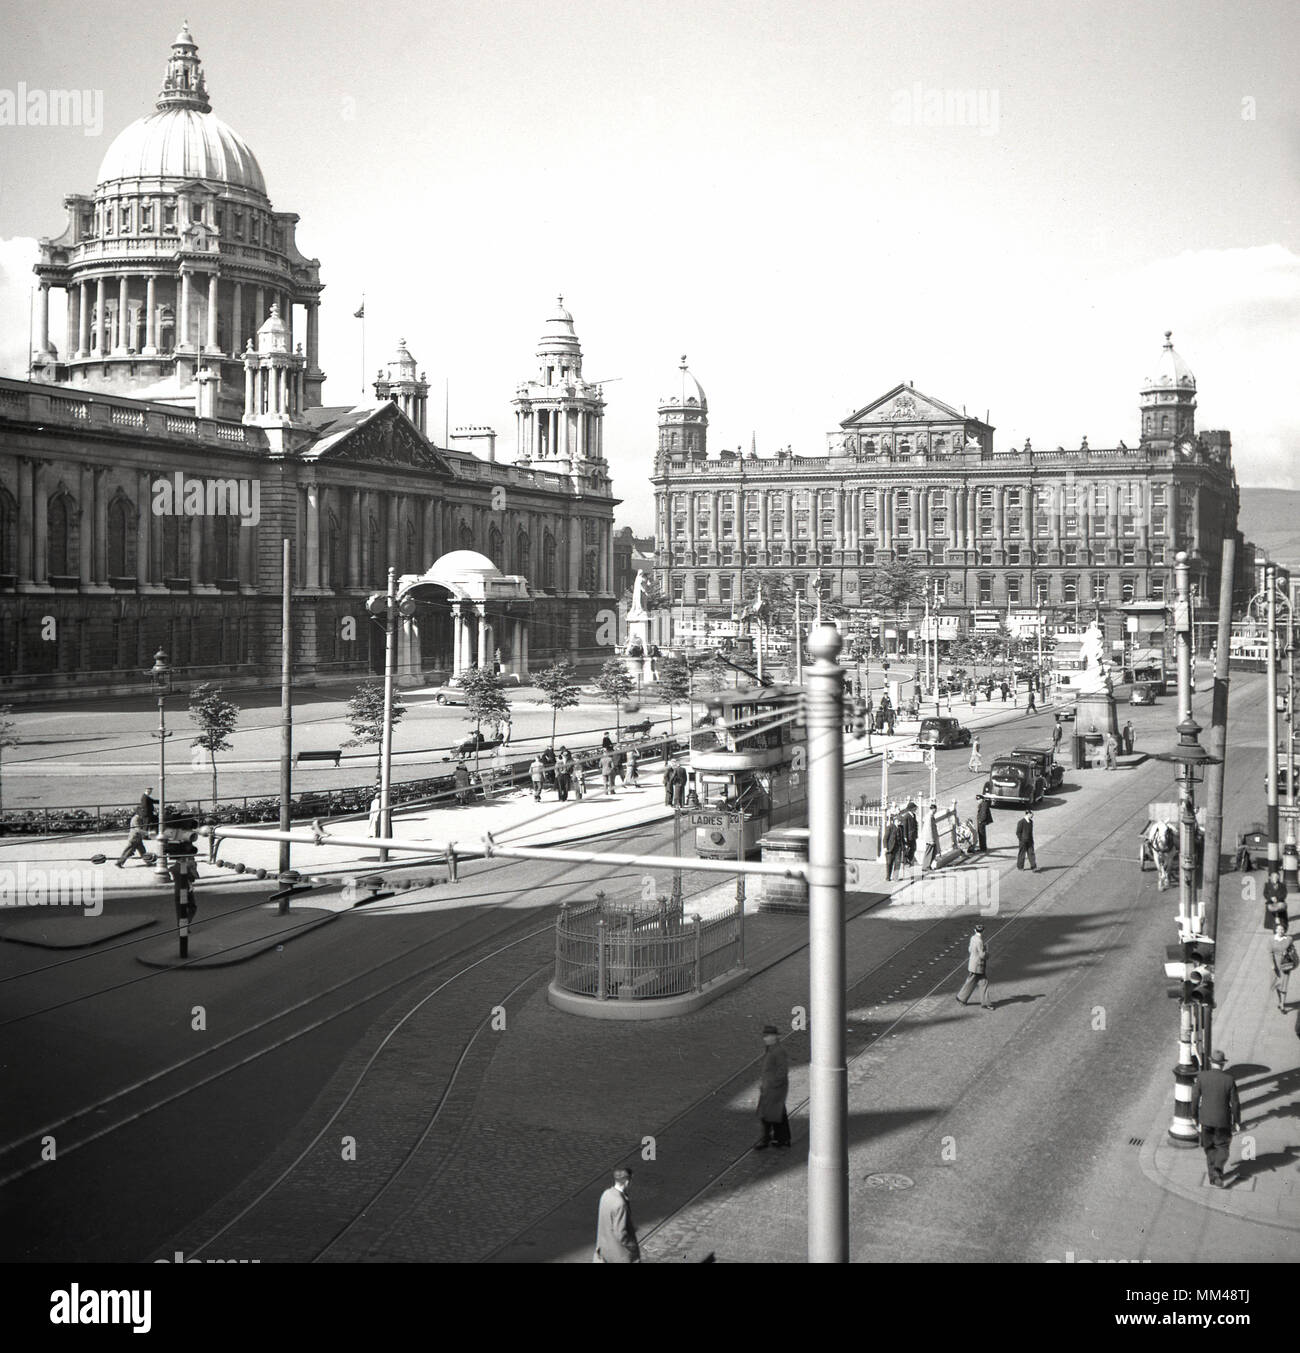 Anni '50, foto storica del centro di Belfast, Irlanda del Nord in quest'epoca. Una vista su Donegall Square che mostra la grandiosa struttura del Municipio di Belfast, un imponente edificio pubblico o civico completato nel 1906 in stile barocco revival. Come wel come attività generale, possiamo vedere i tram sono ancora in funzione. Foto Stock